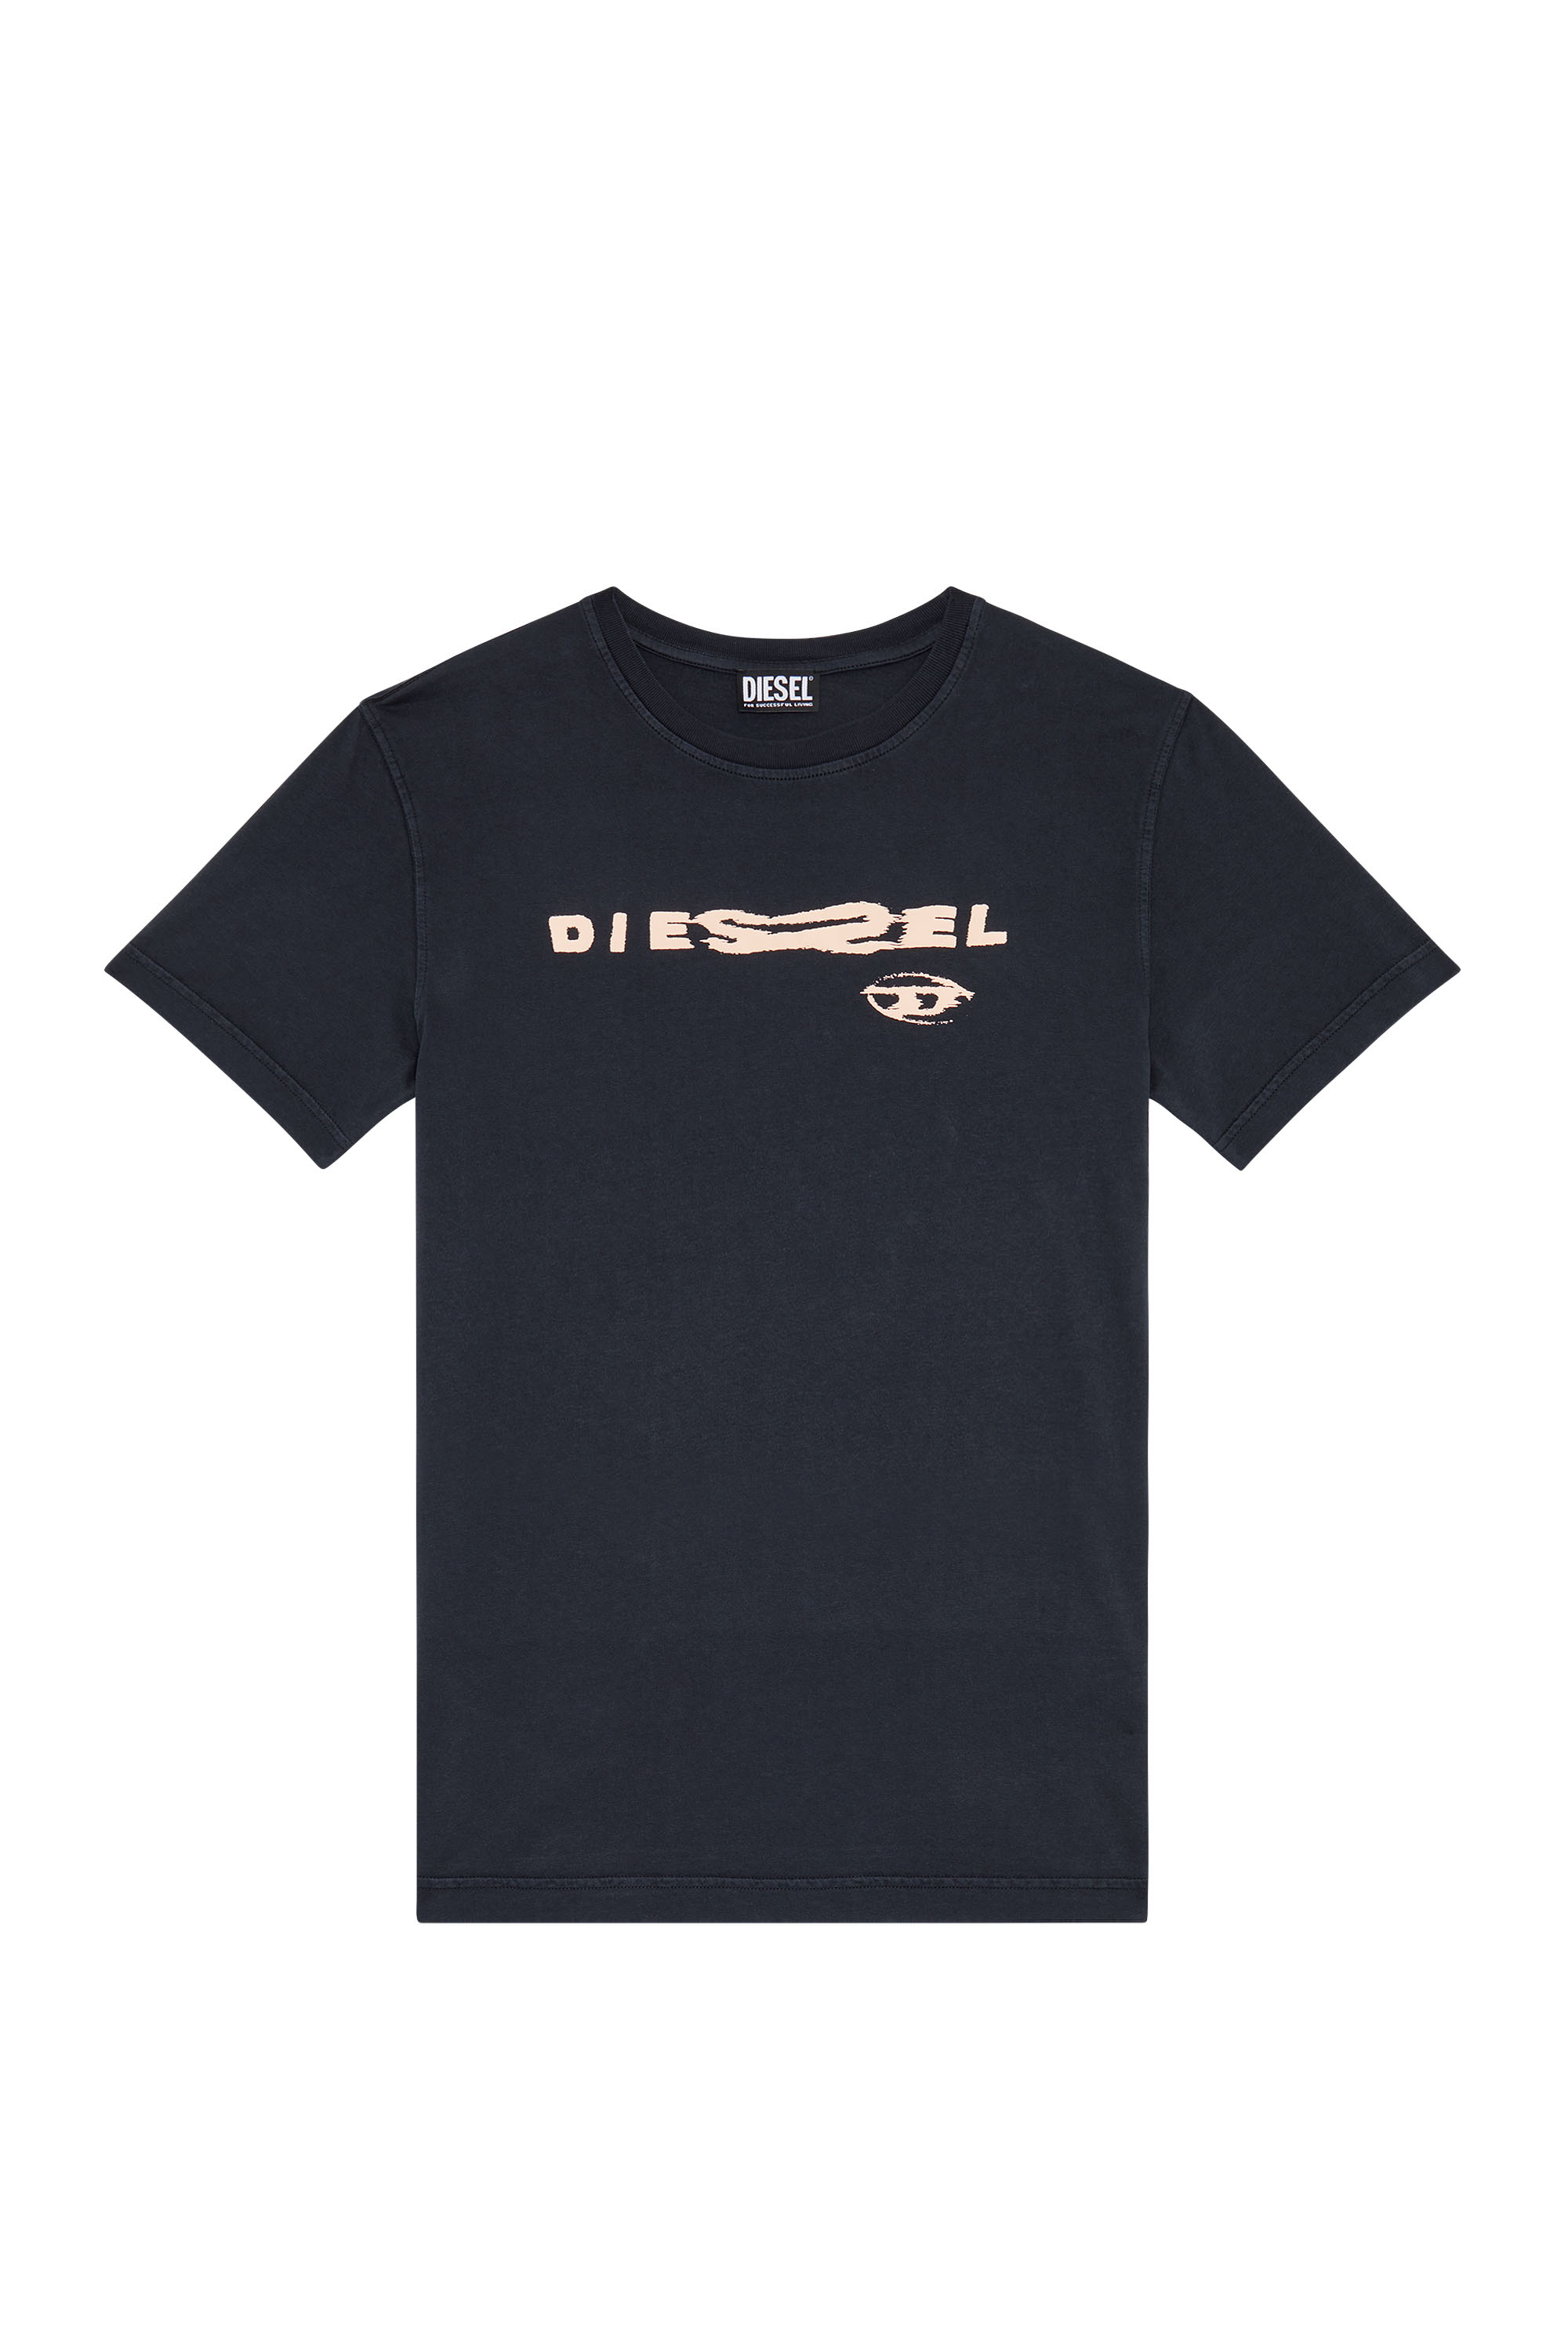 Diesel - T-DANNY, Black - Image 5